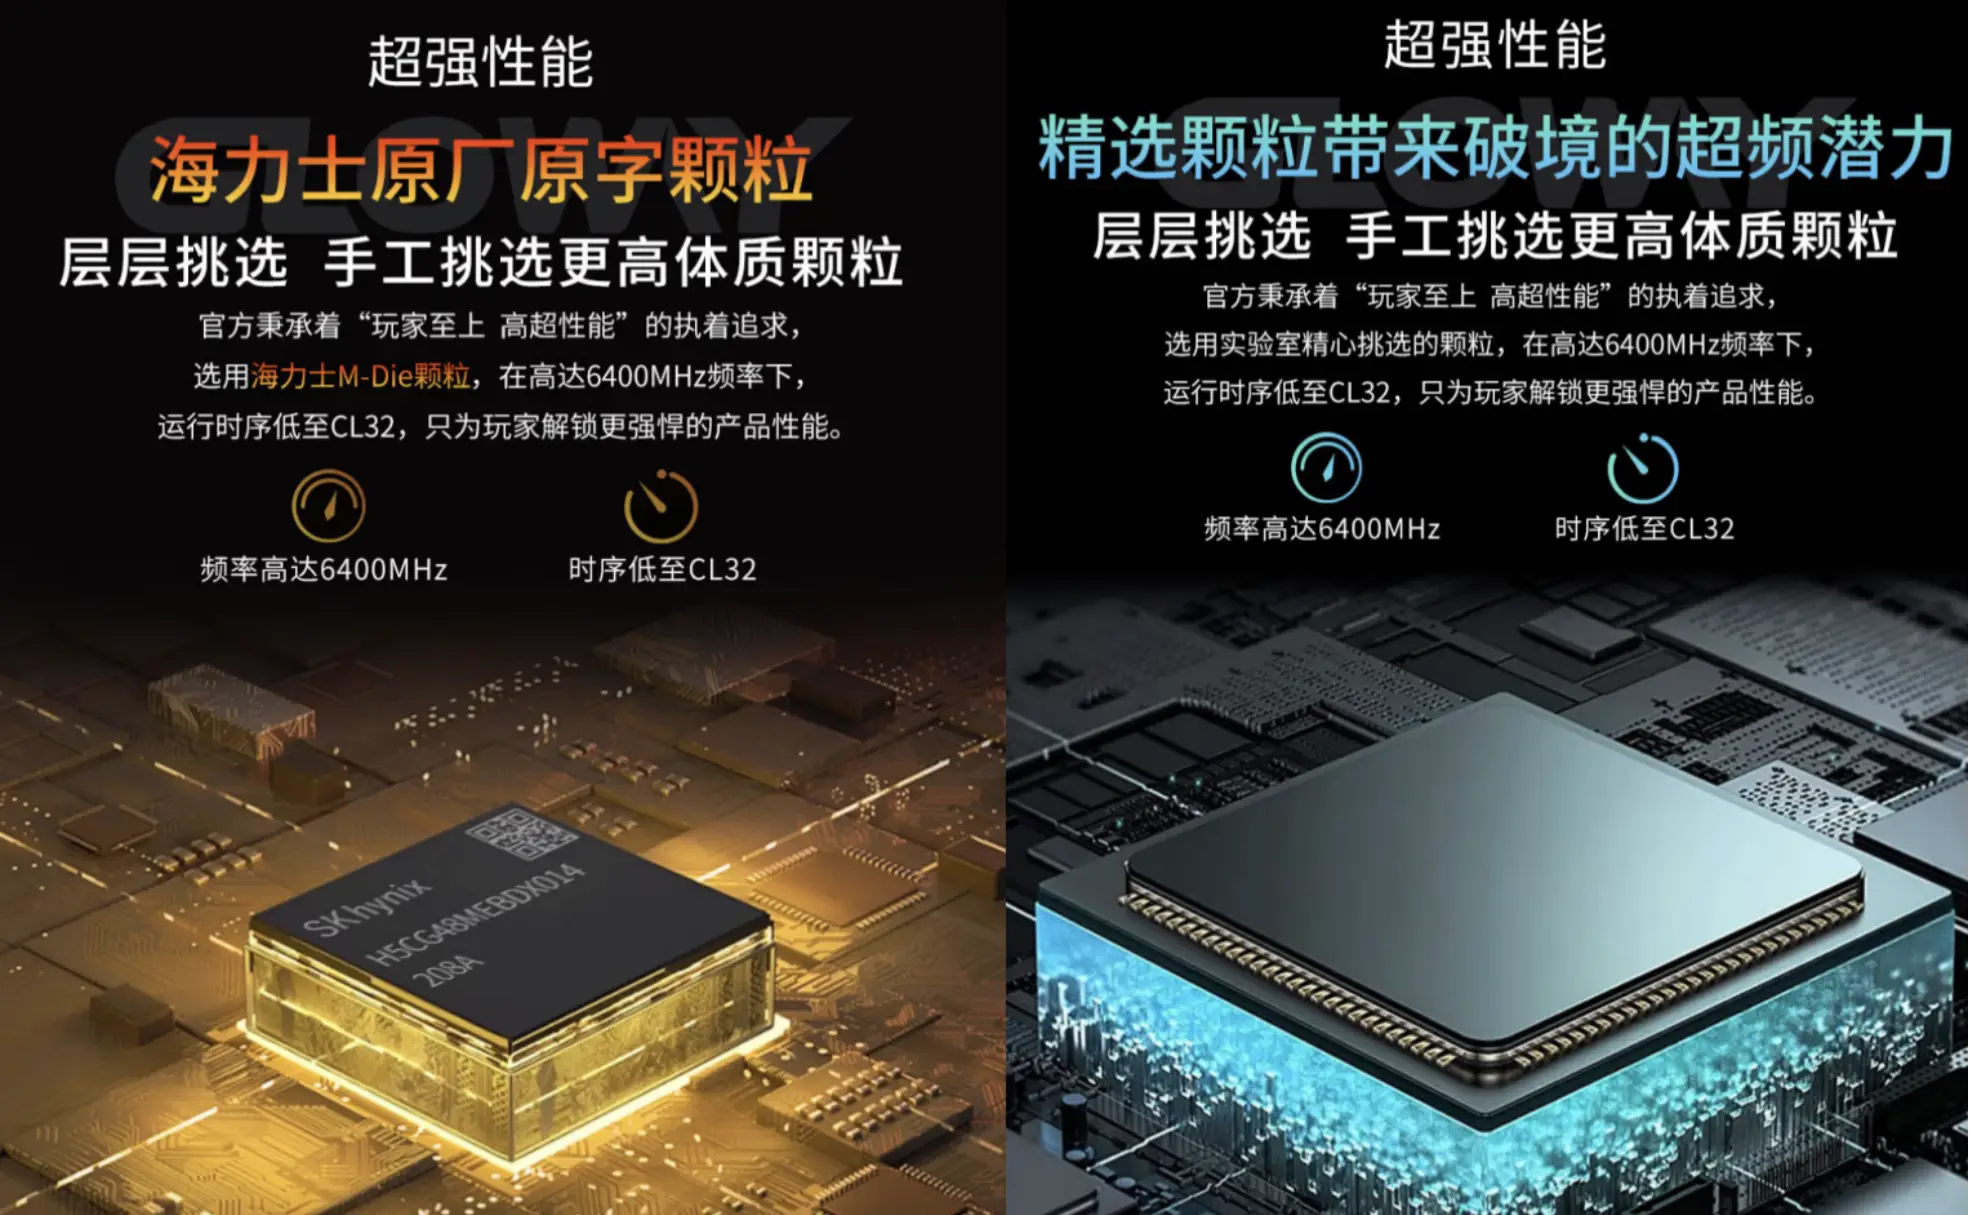 新品 DDR4 34GB 内存测试报告：性能、外观与布置全解析  第1张